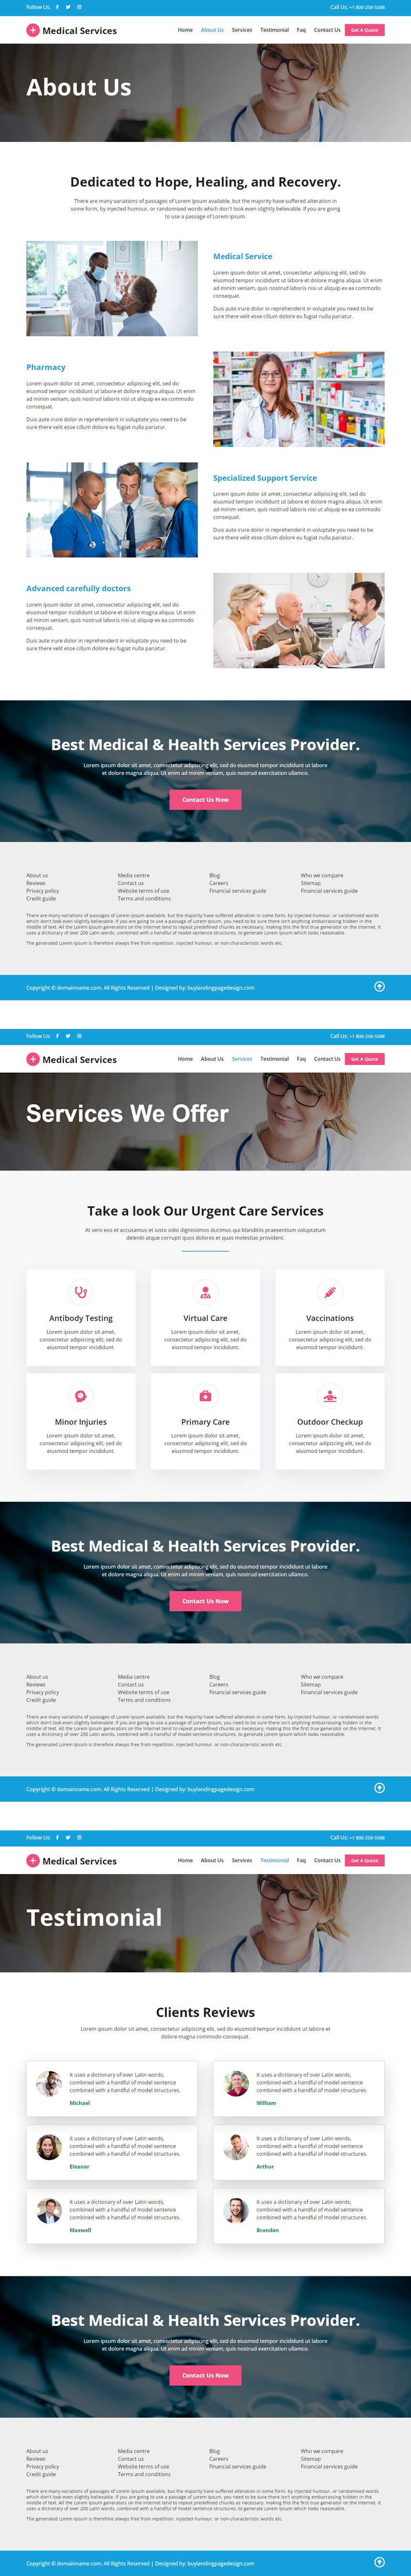 emergency medical services responsive website design